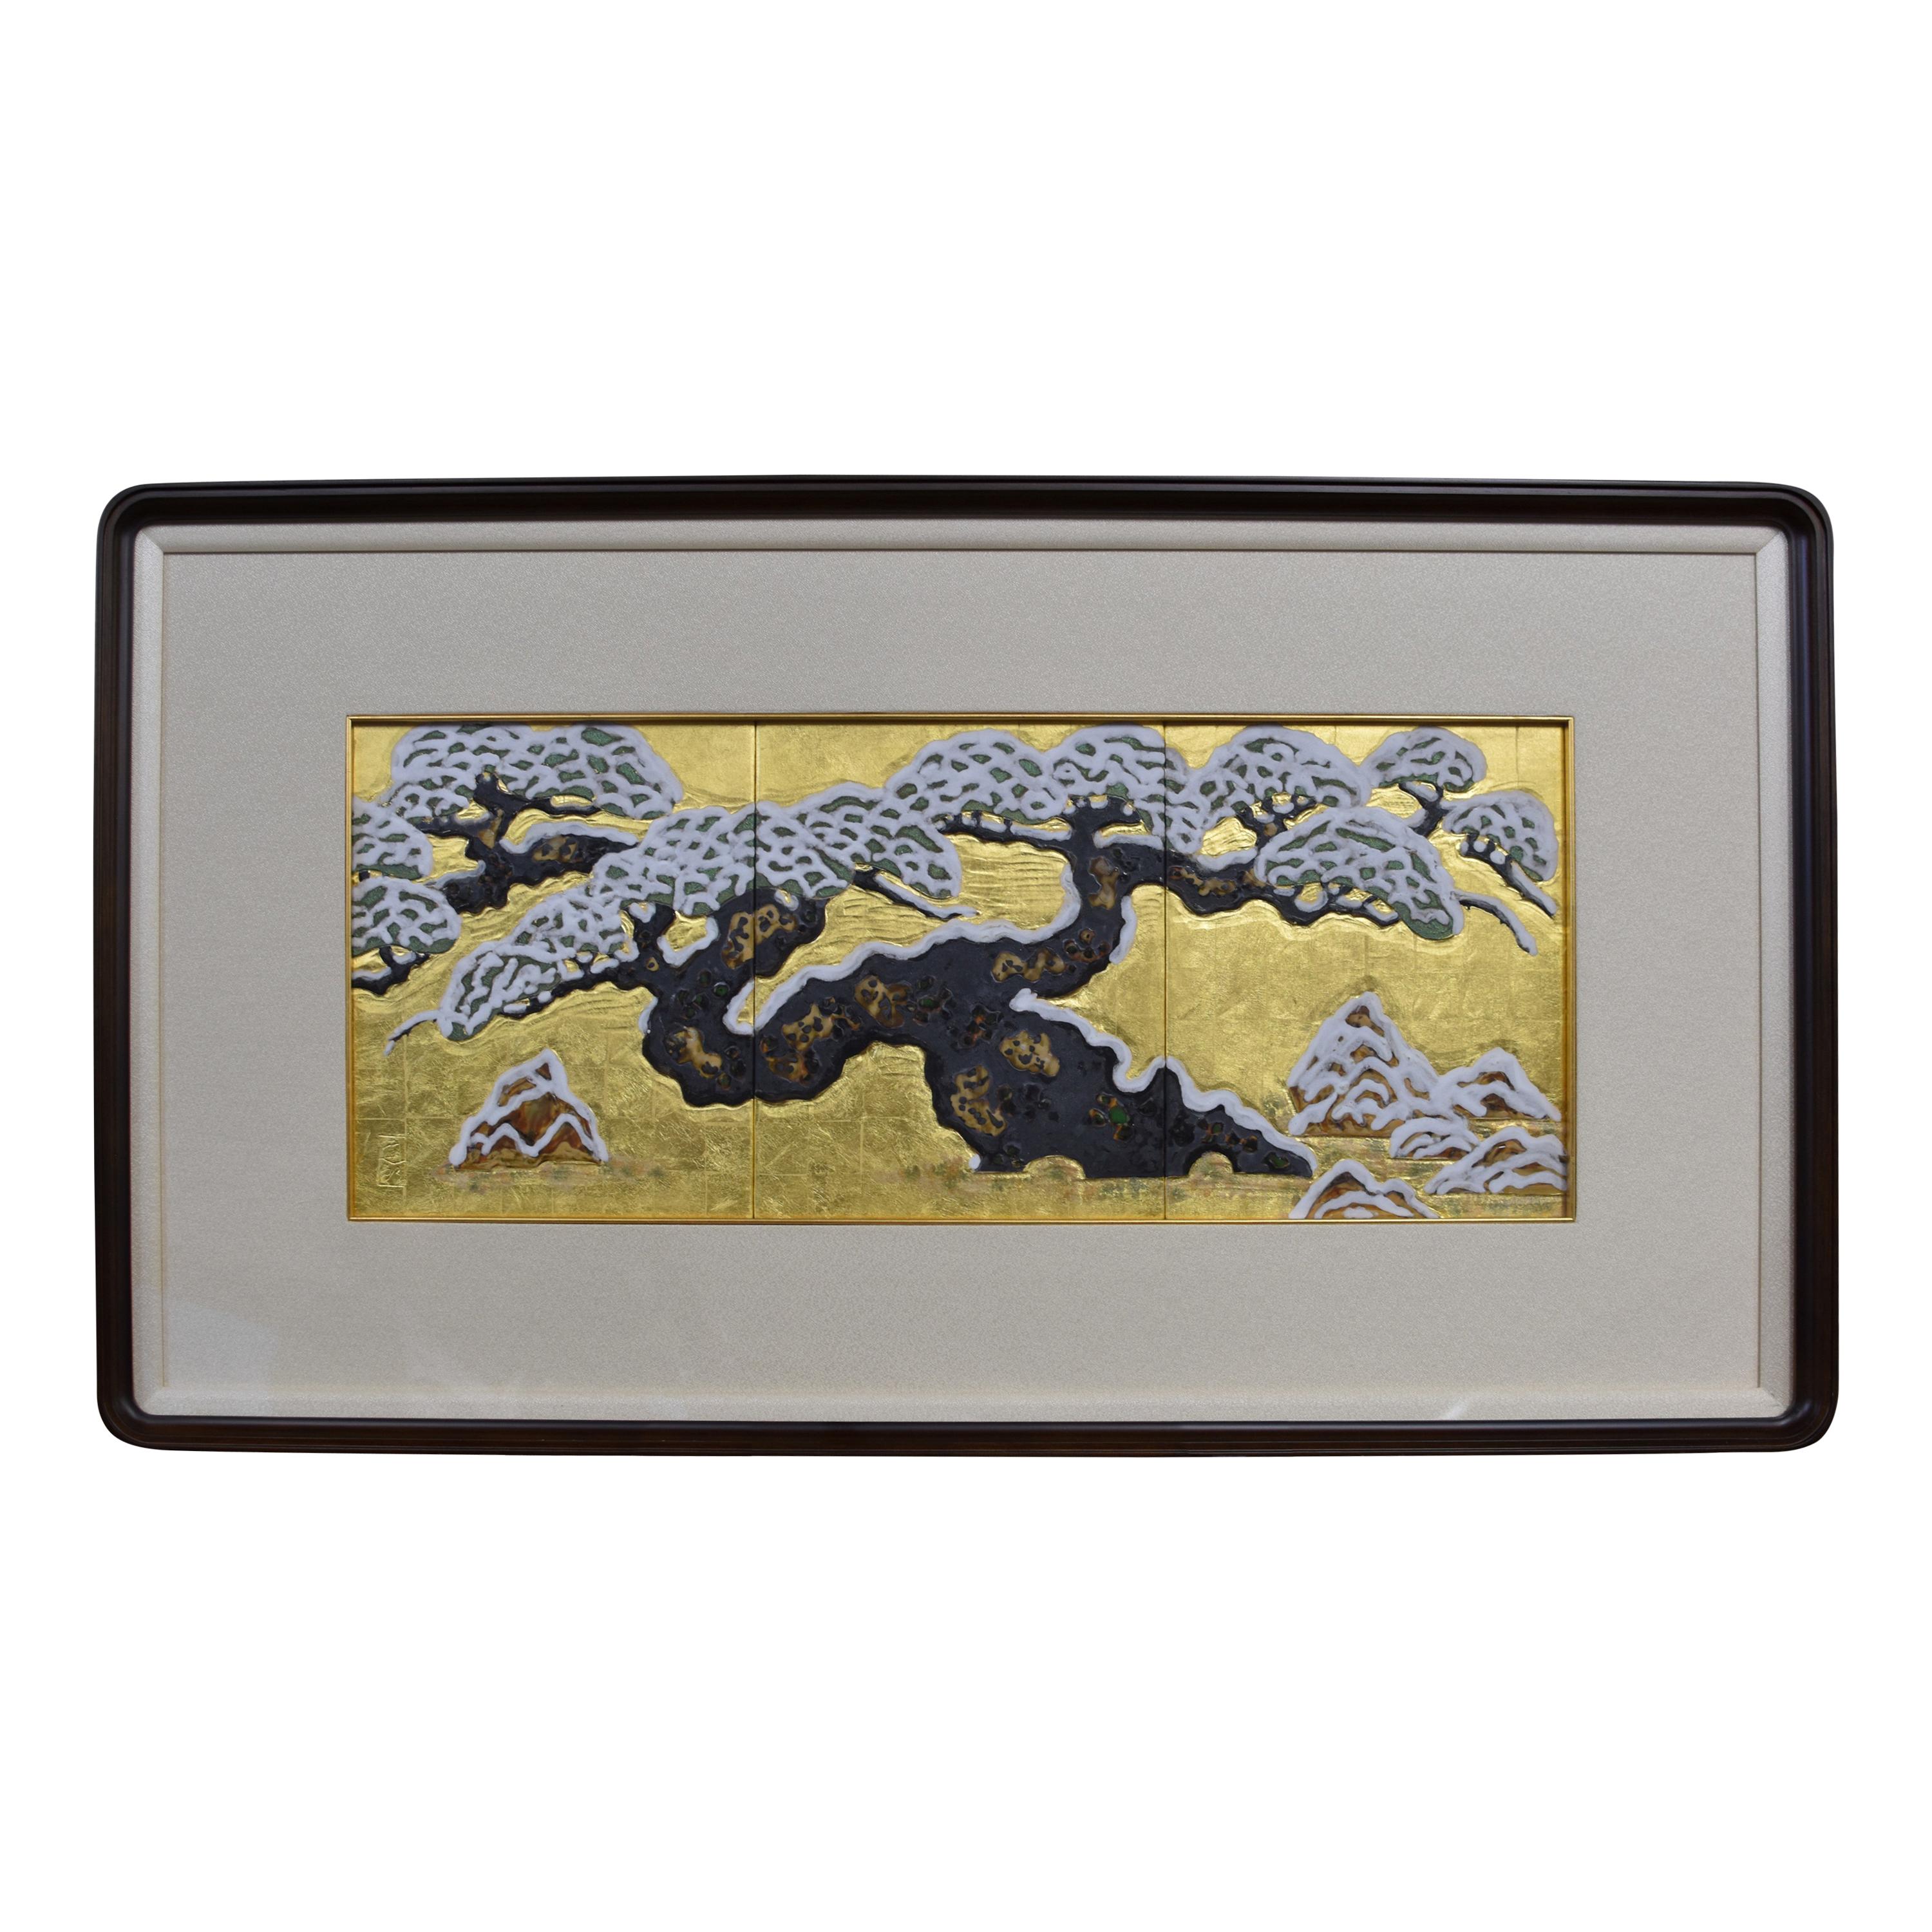 Panneau de porcelaine japonais encadré à la main avec feuille d'or, peint à la main par un maître artiste